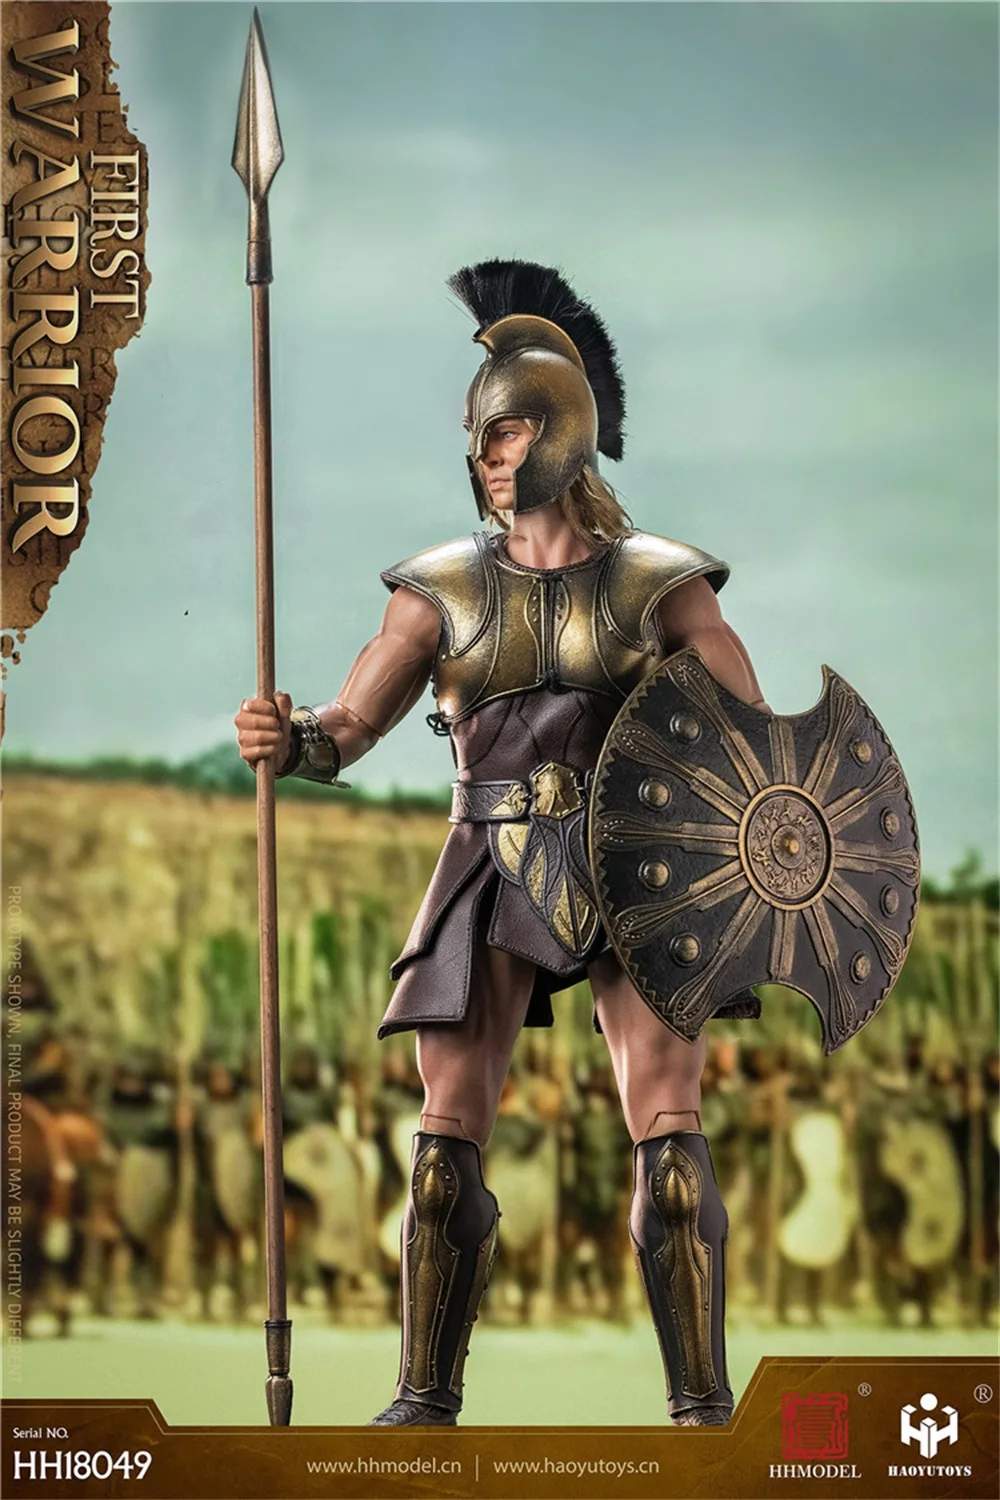 

1/6 HHMODEL HAOYUTOYS HH18049 имперский Легио греческий первый воин боевой щит длинный копье меч ПВХ материал для сбора